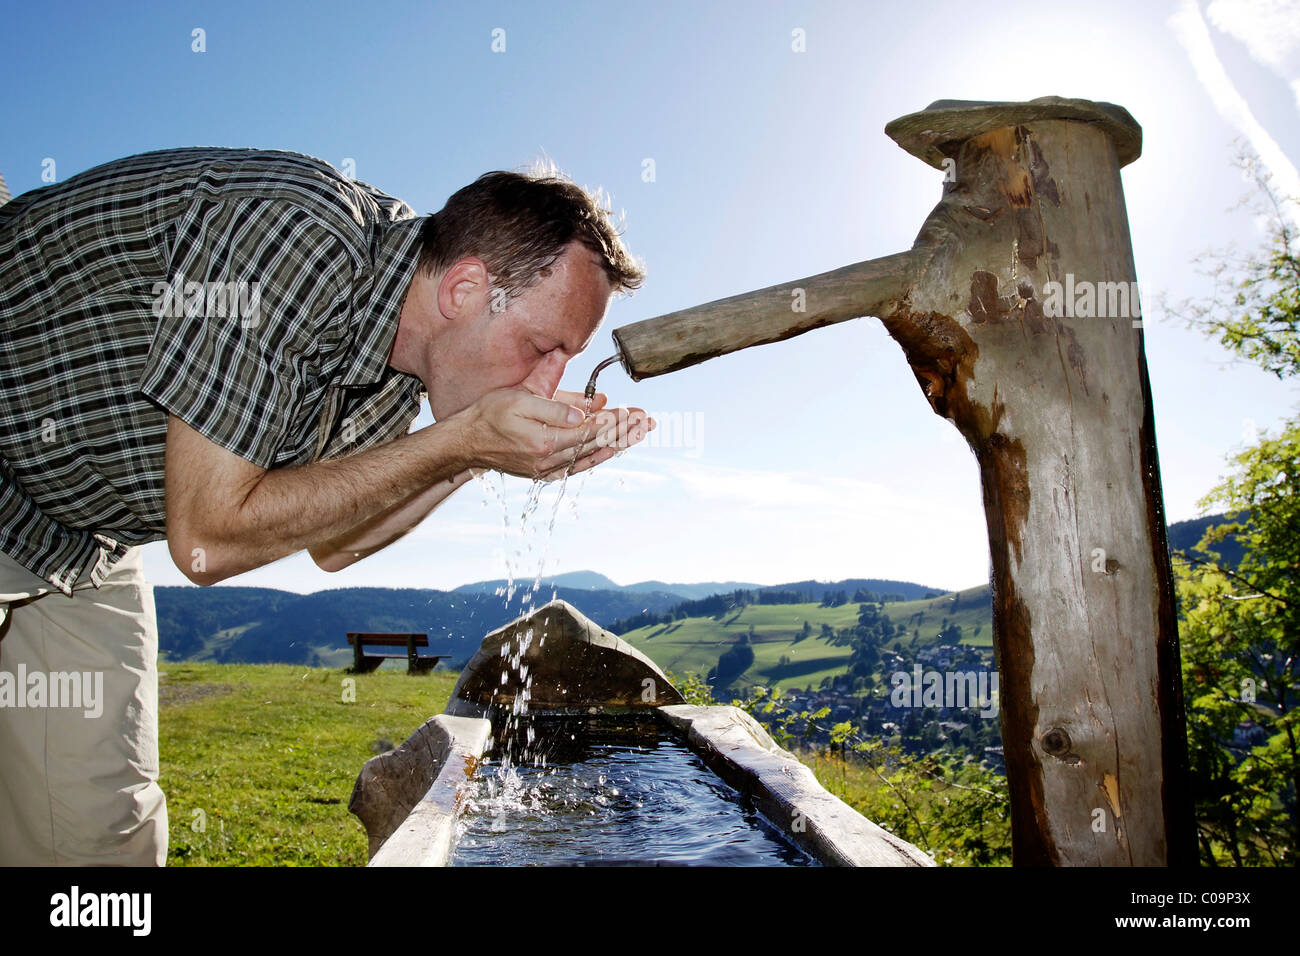 Un homme dans son milieu 40 assouvit sa soif à un puits, Triberg en Forêt-Noire, Bade-Wurtemberg, Allemagne, Europe Banque D'Images